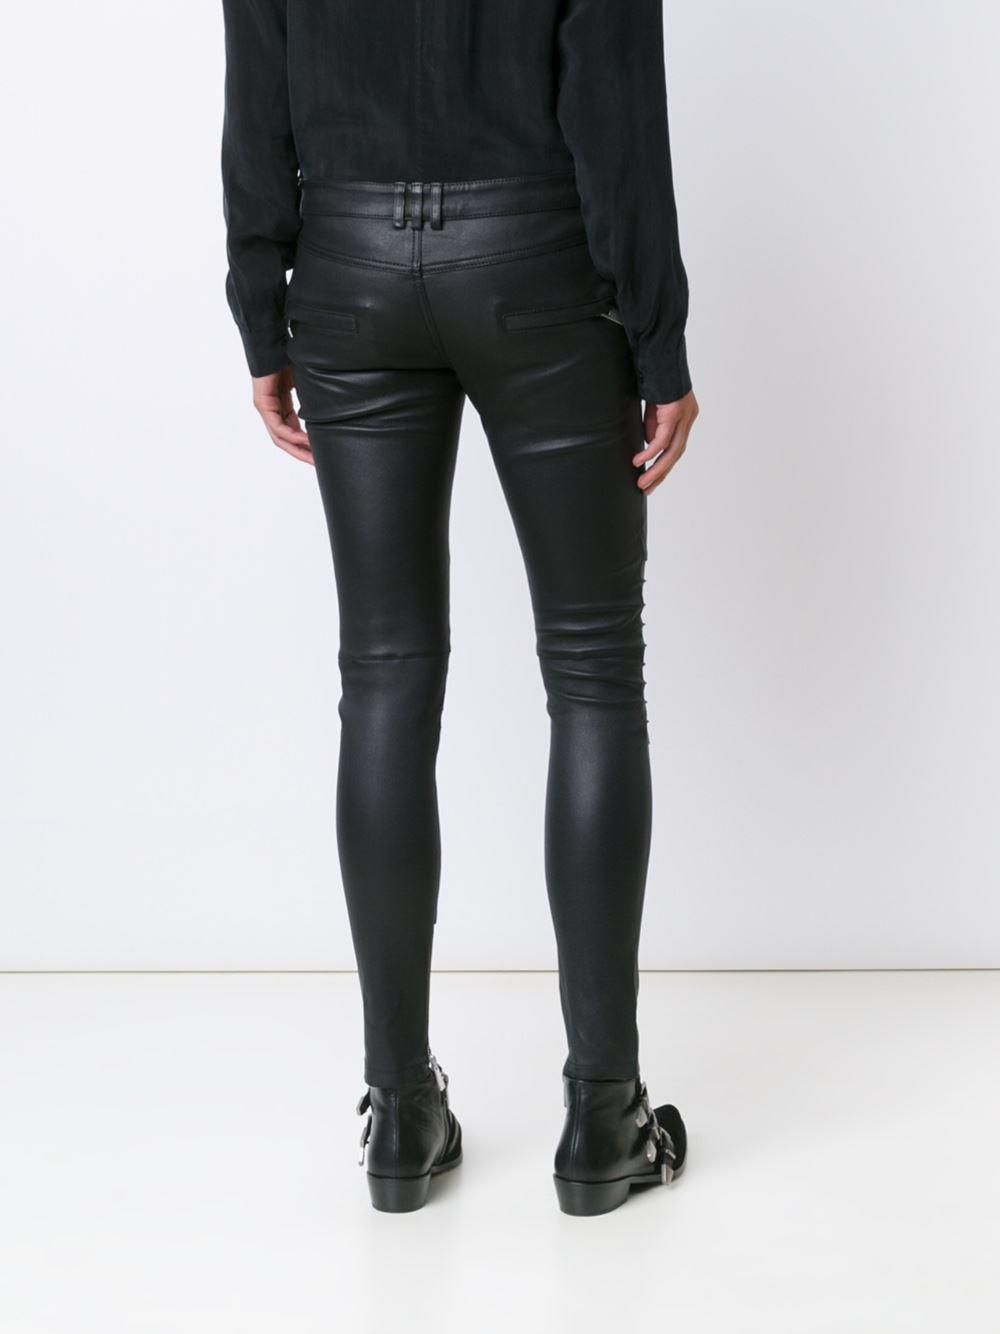 Anine Bing Biker Leather Pants in Black - Lyst